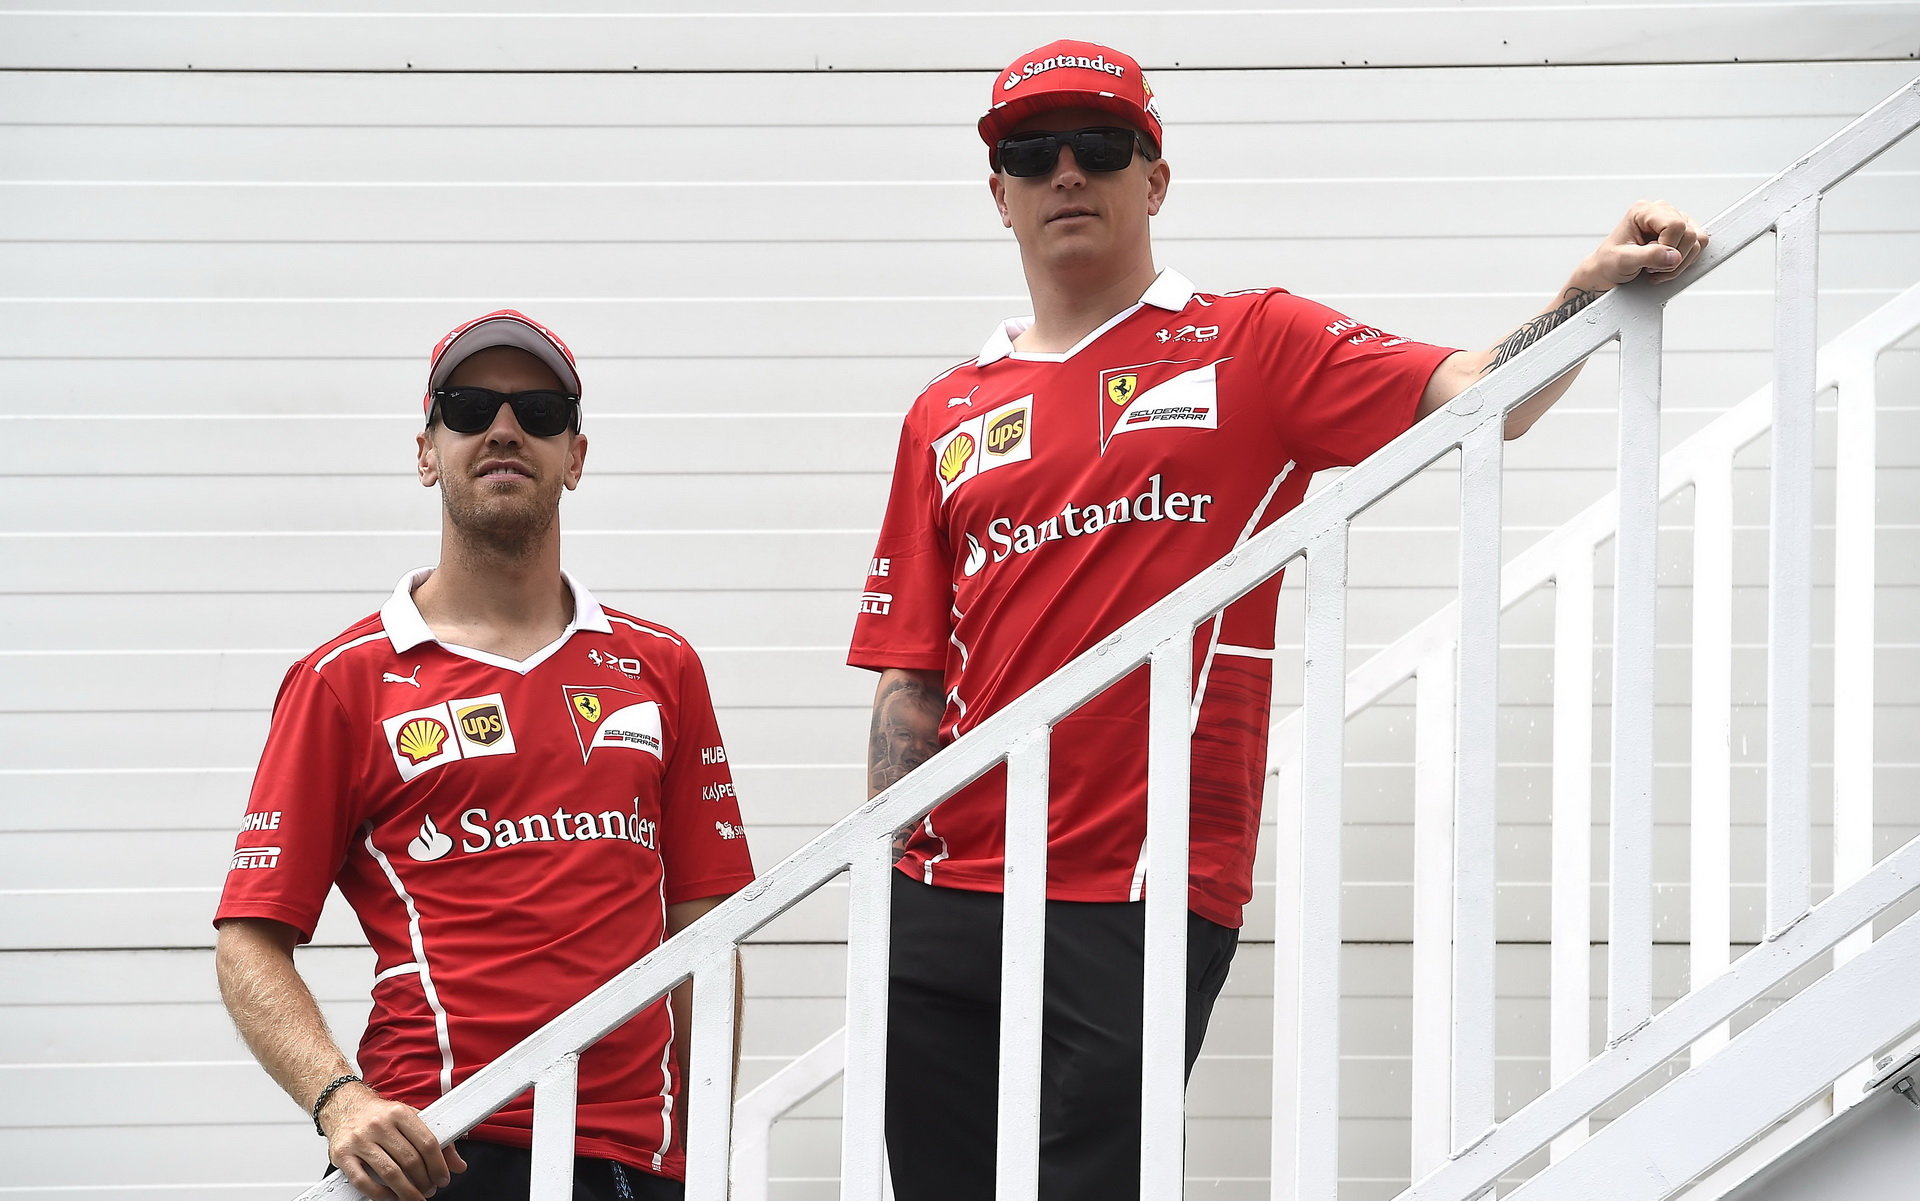 Jezdci Ferrari se v Silverstone můžou těšit na nový motor, porazí tam Mercedesy?